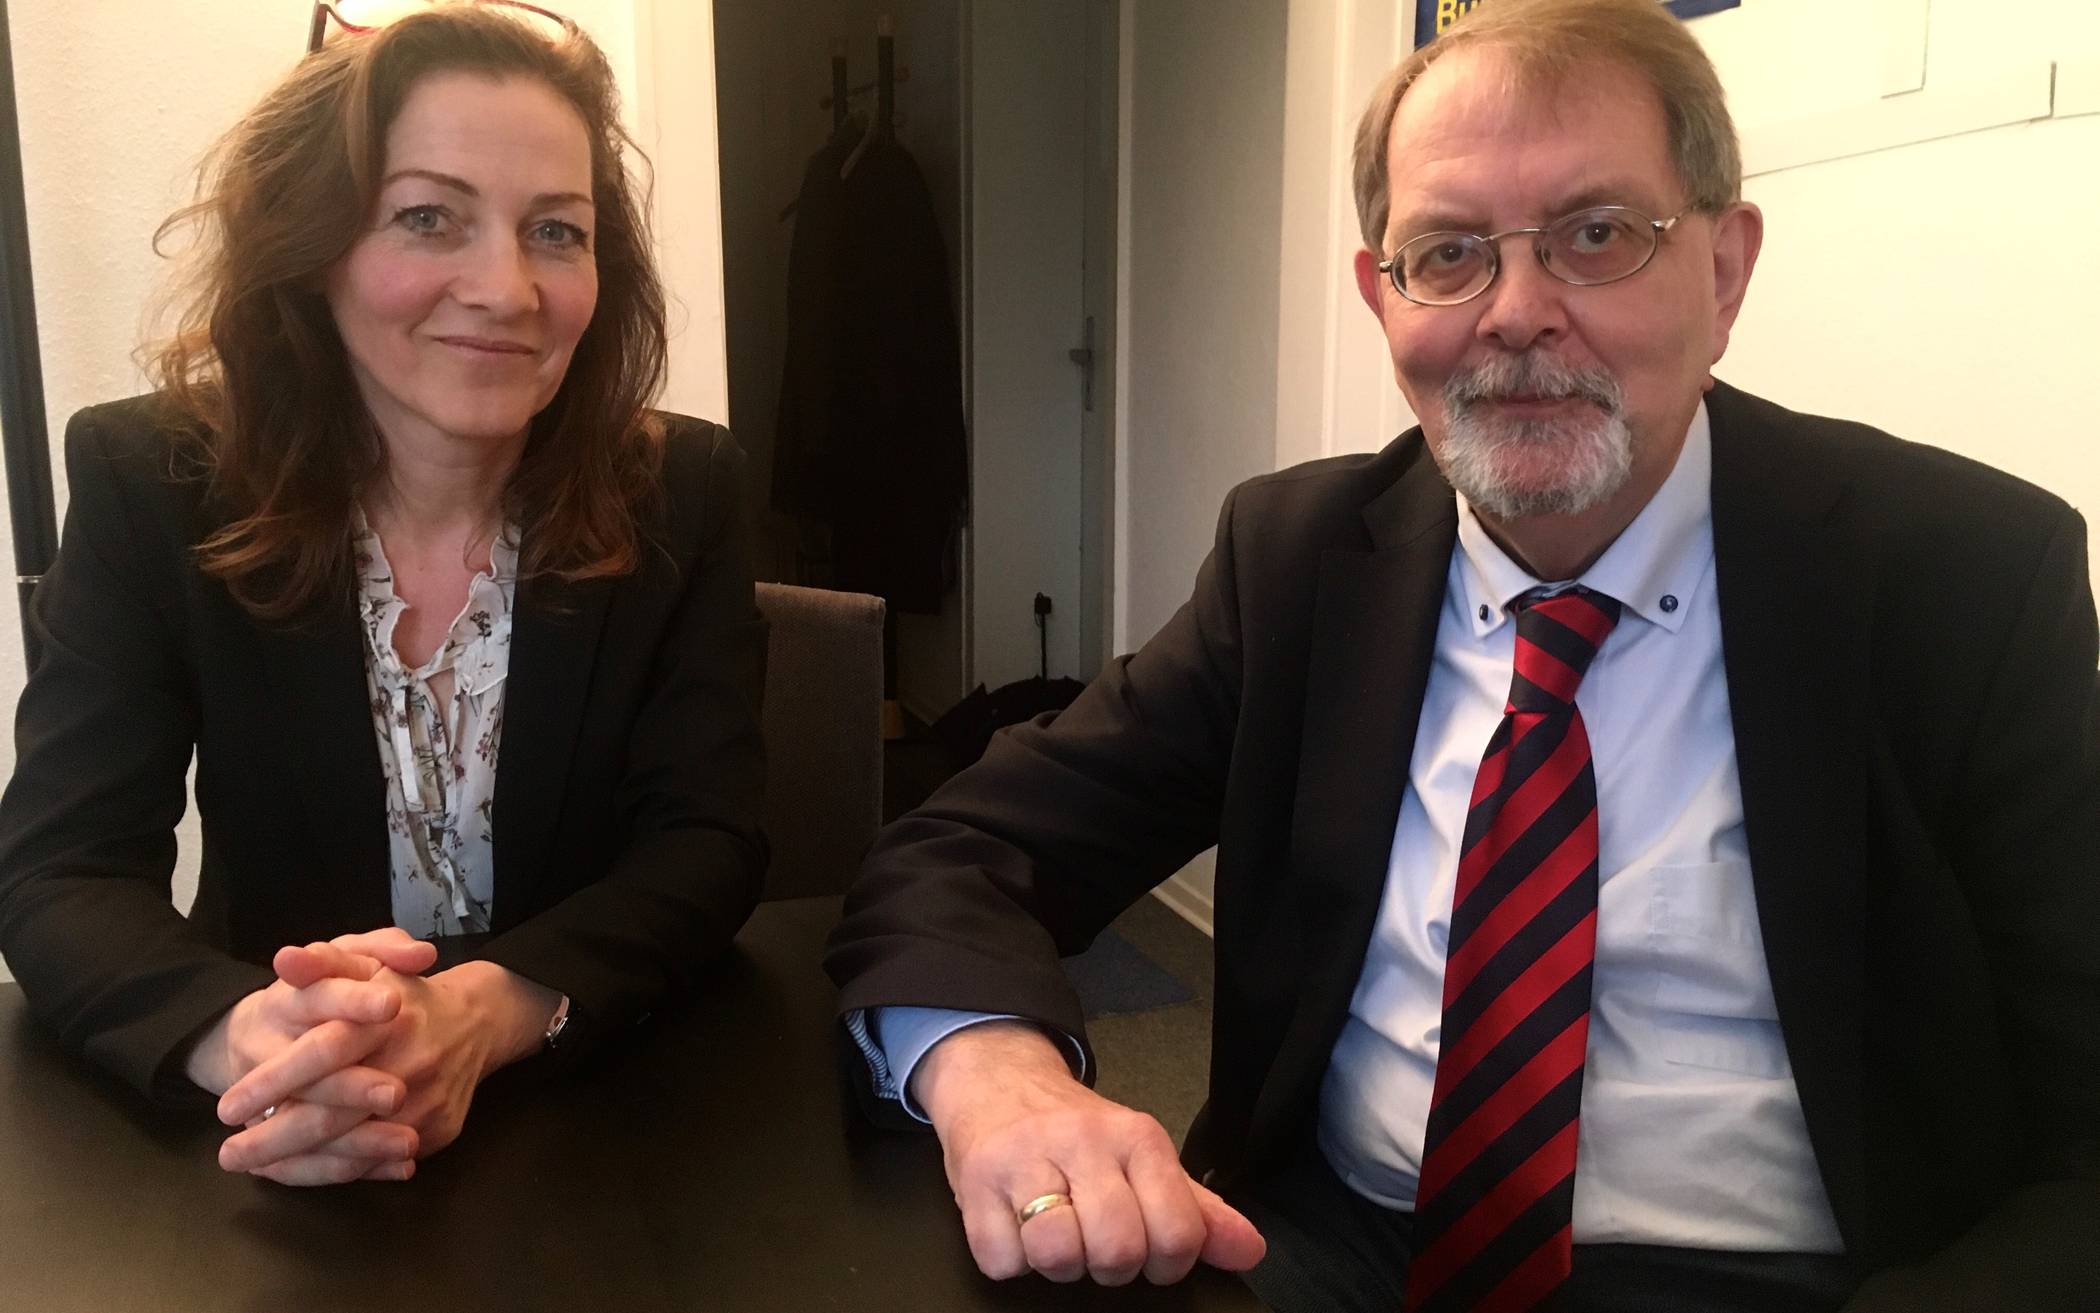  Andrea Metz möchte Mettmanns Bürgermeisterin werden. Unterstützt wird sie vom Fraktionsvorsitzenden der Liberalen, Klaus Müller. 